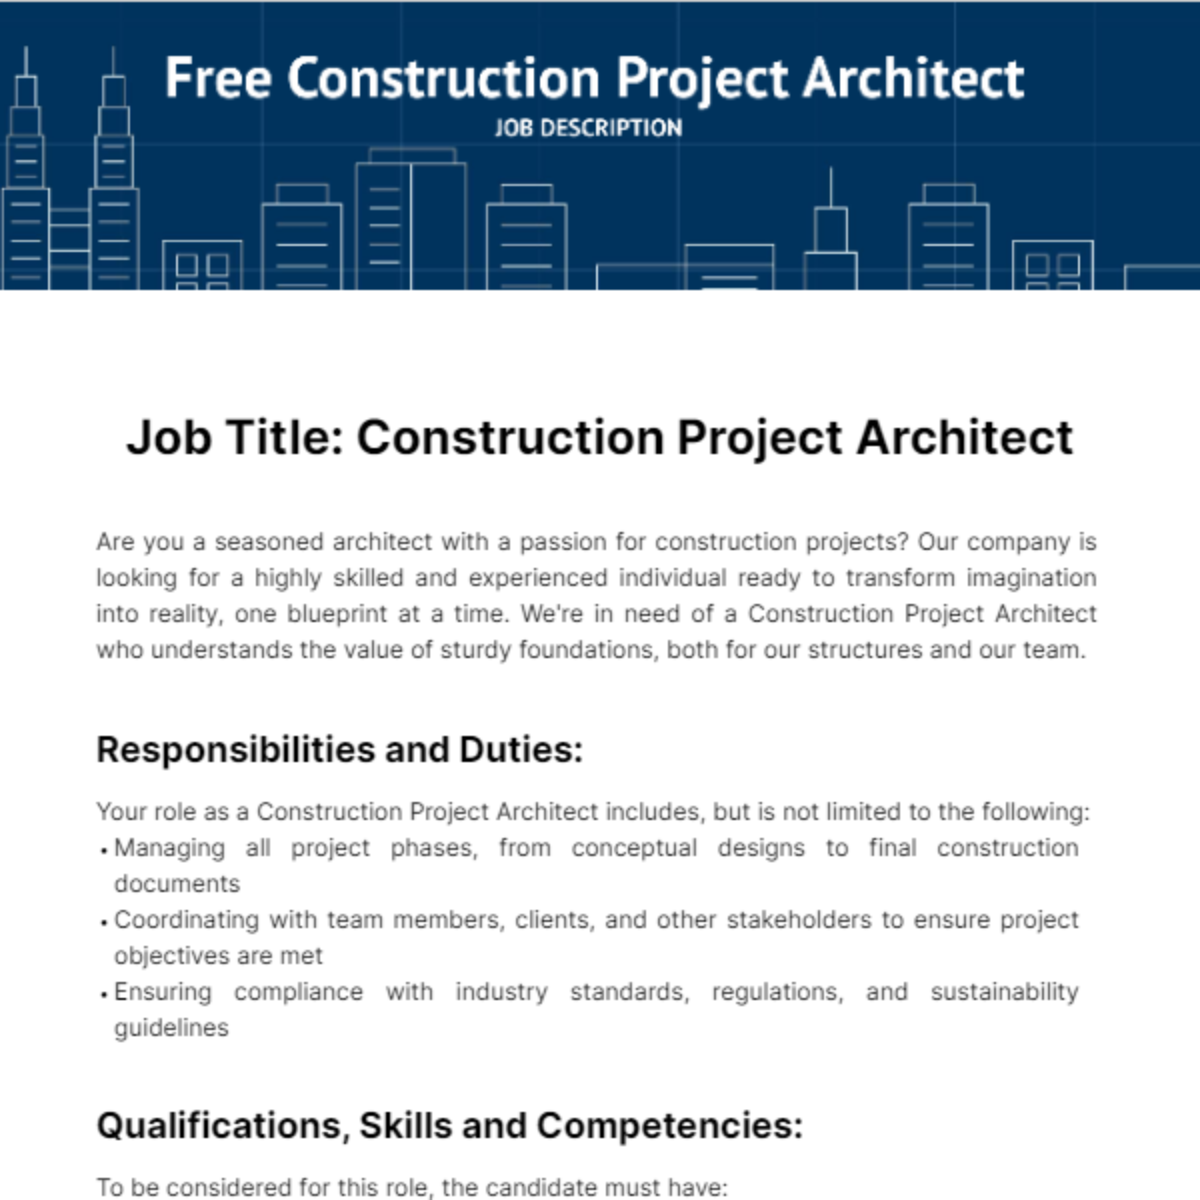 Construction Project Architect Job Description Template